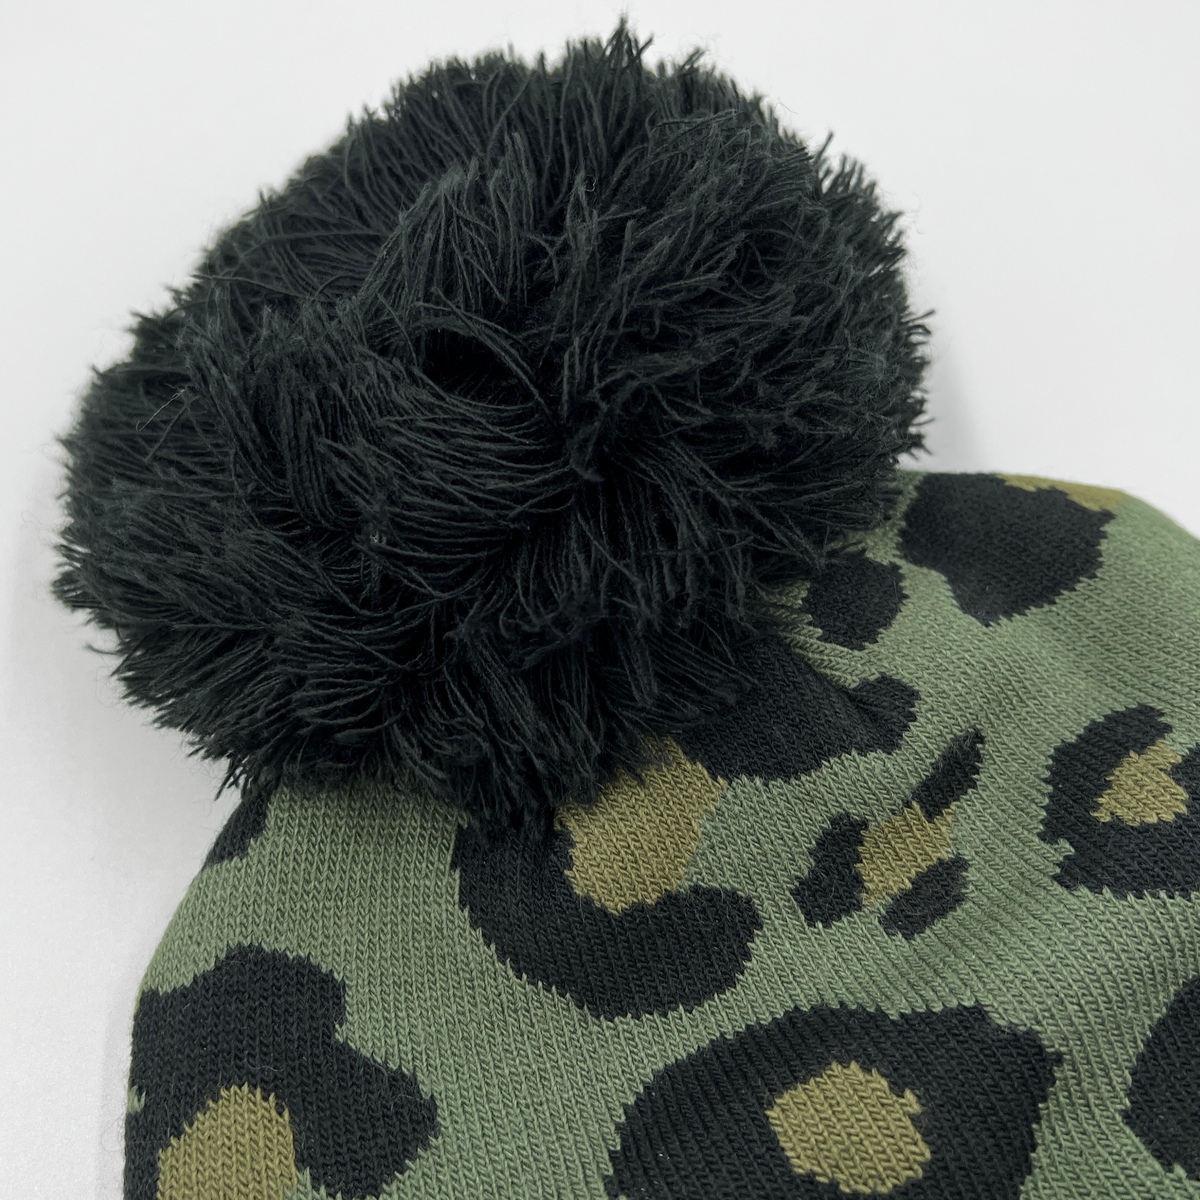 Winter Warm Leopard Print PomPom Beanie Hats